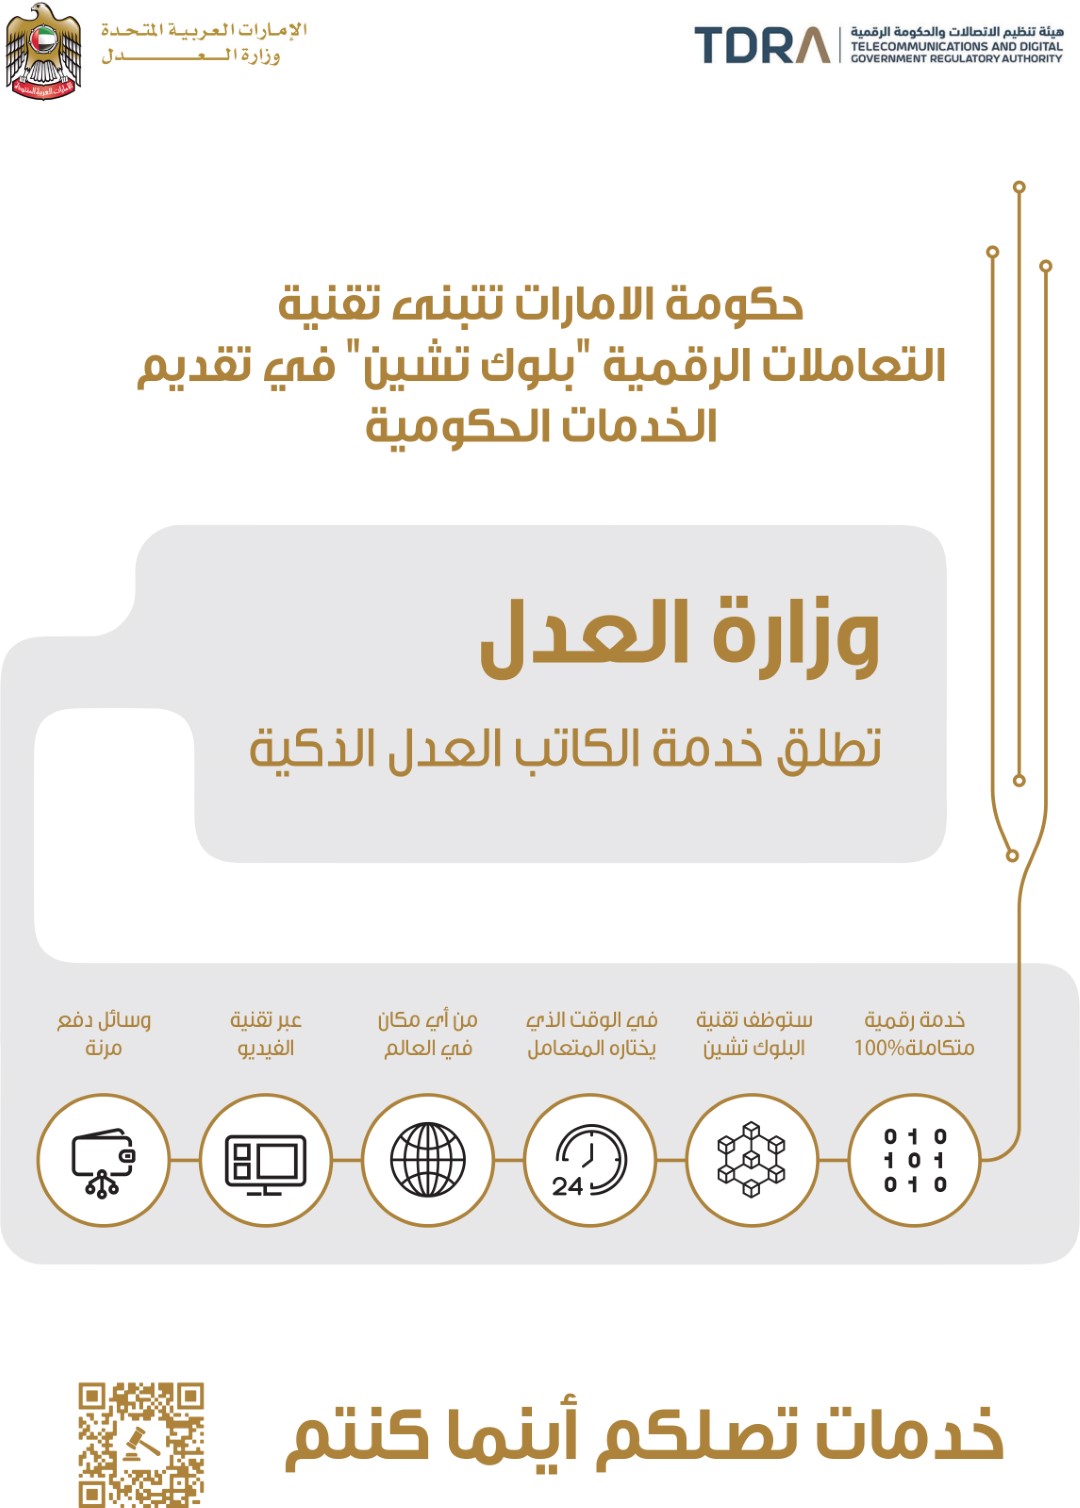 حكومة الإمارات توظف التكنولوجيا الرقمية في معاملات 